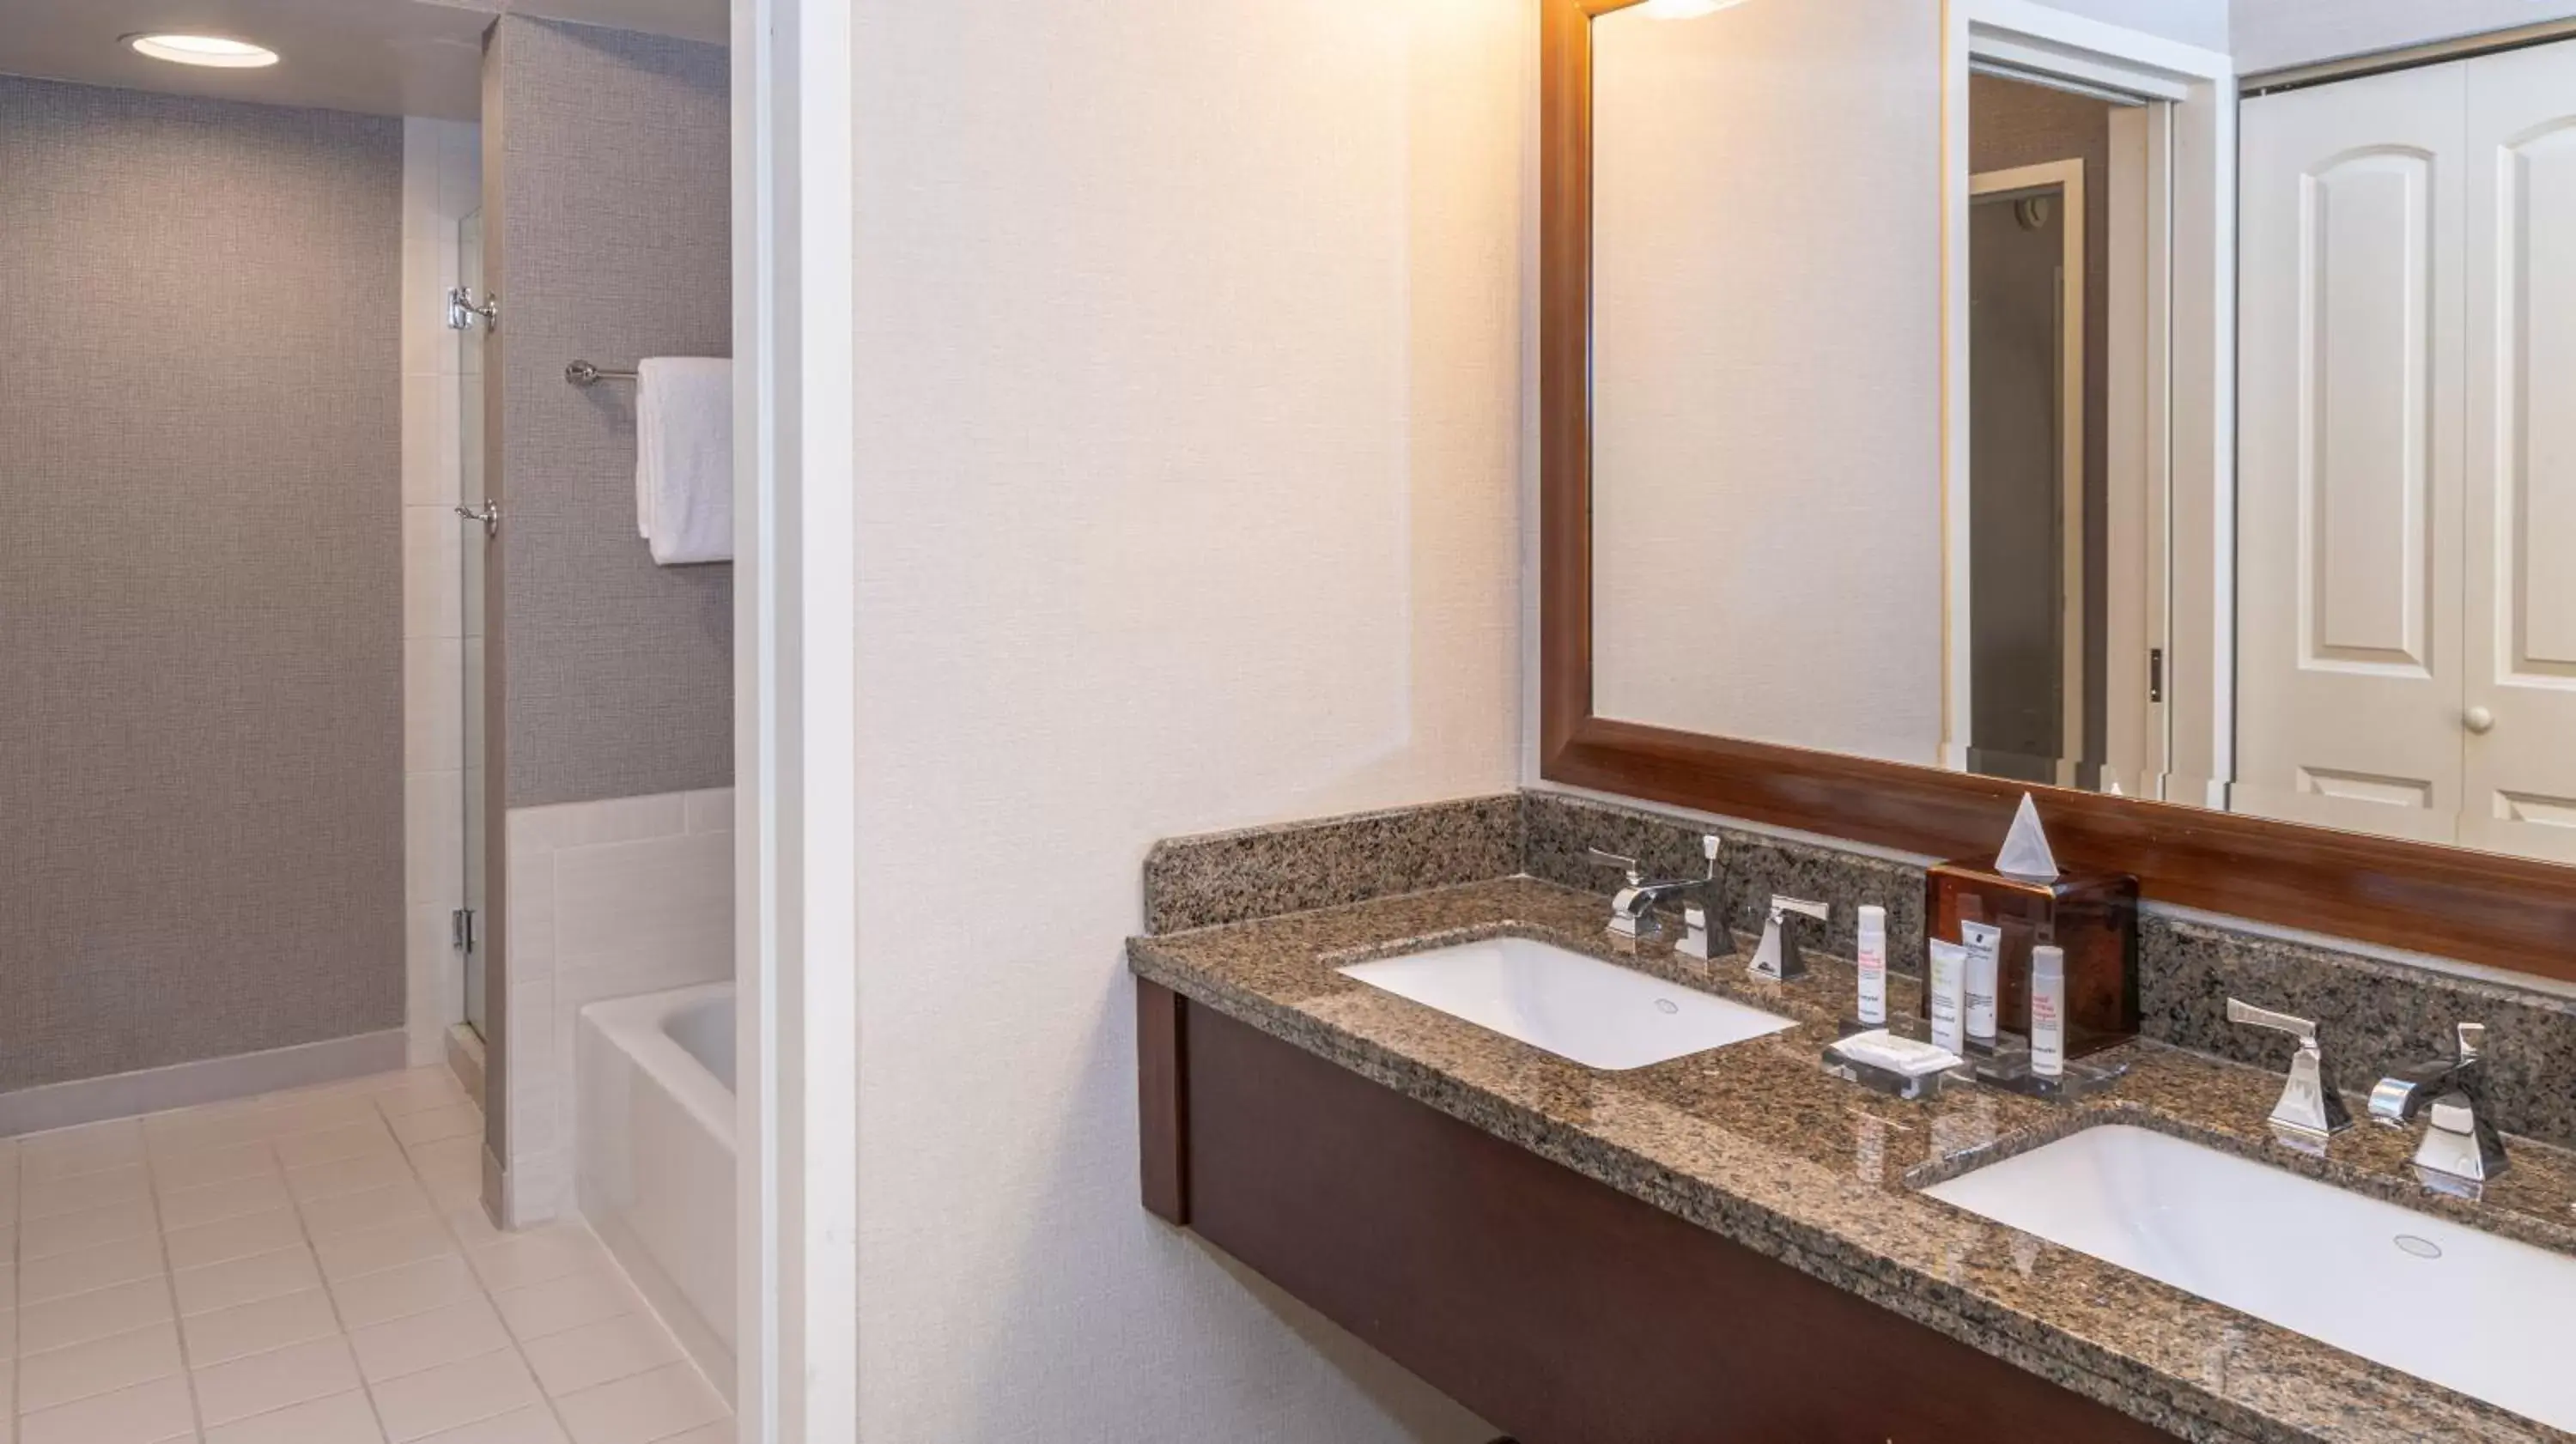 Shower, Bathroom in Chicago Marriott Suites Deerfield